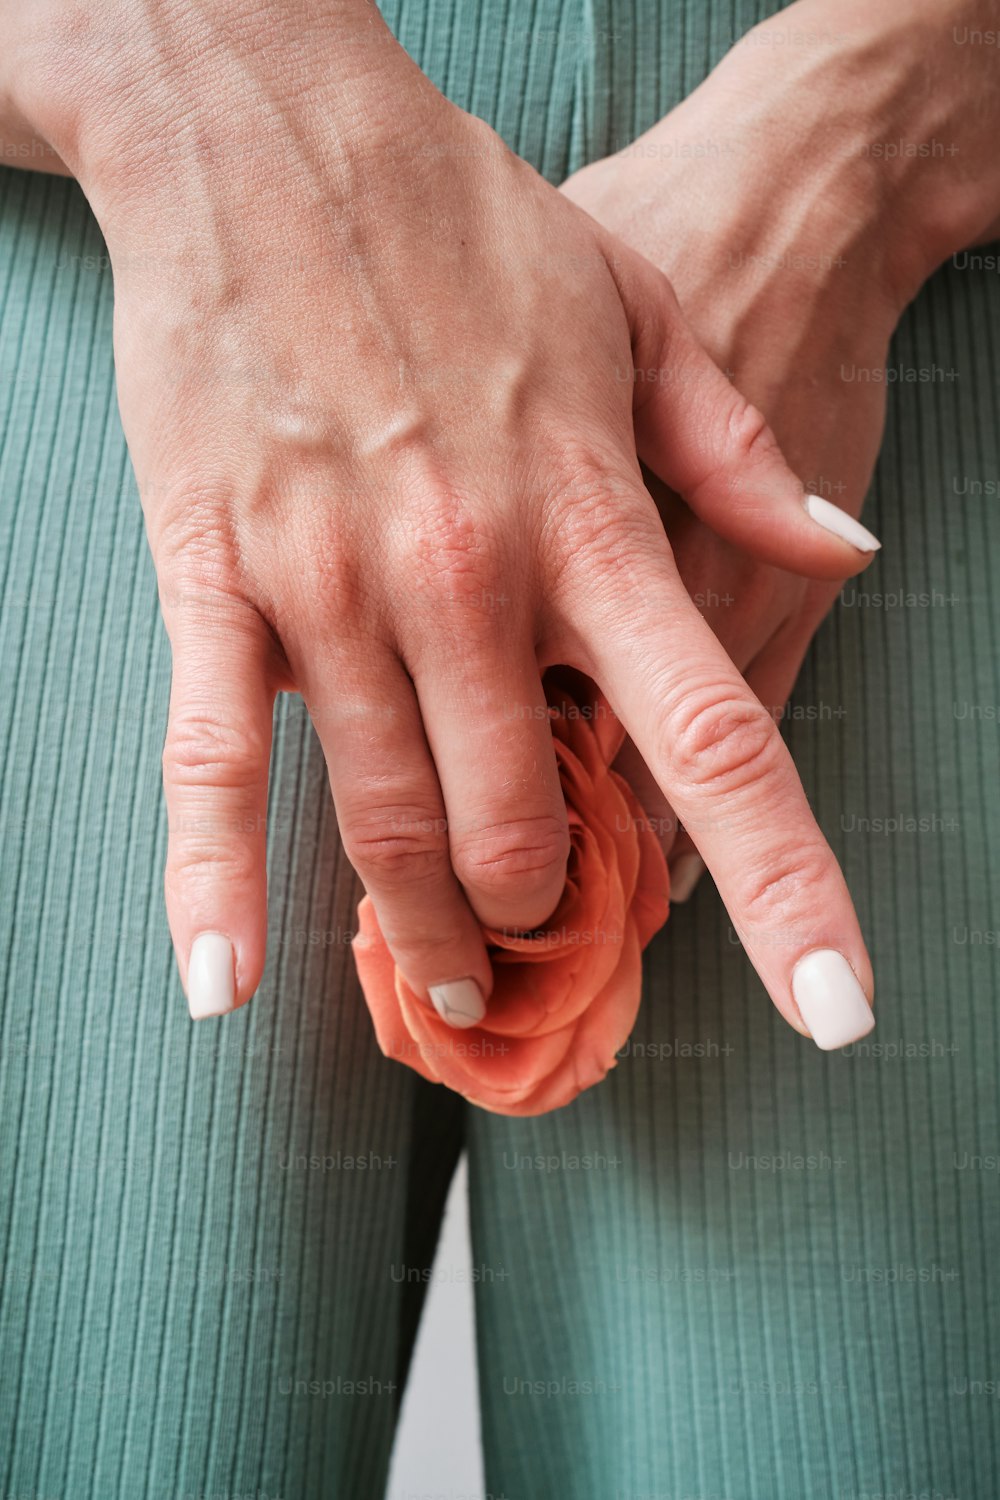 Un primer plano de las manos de una persona sosteniendo una flor